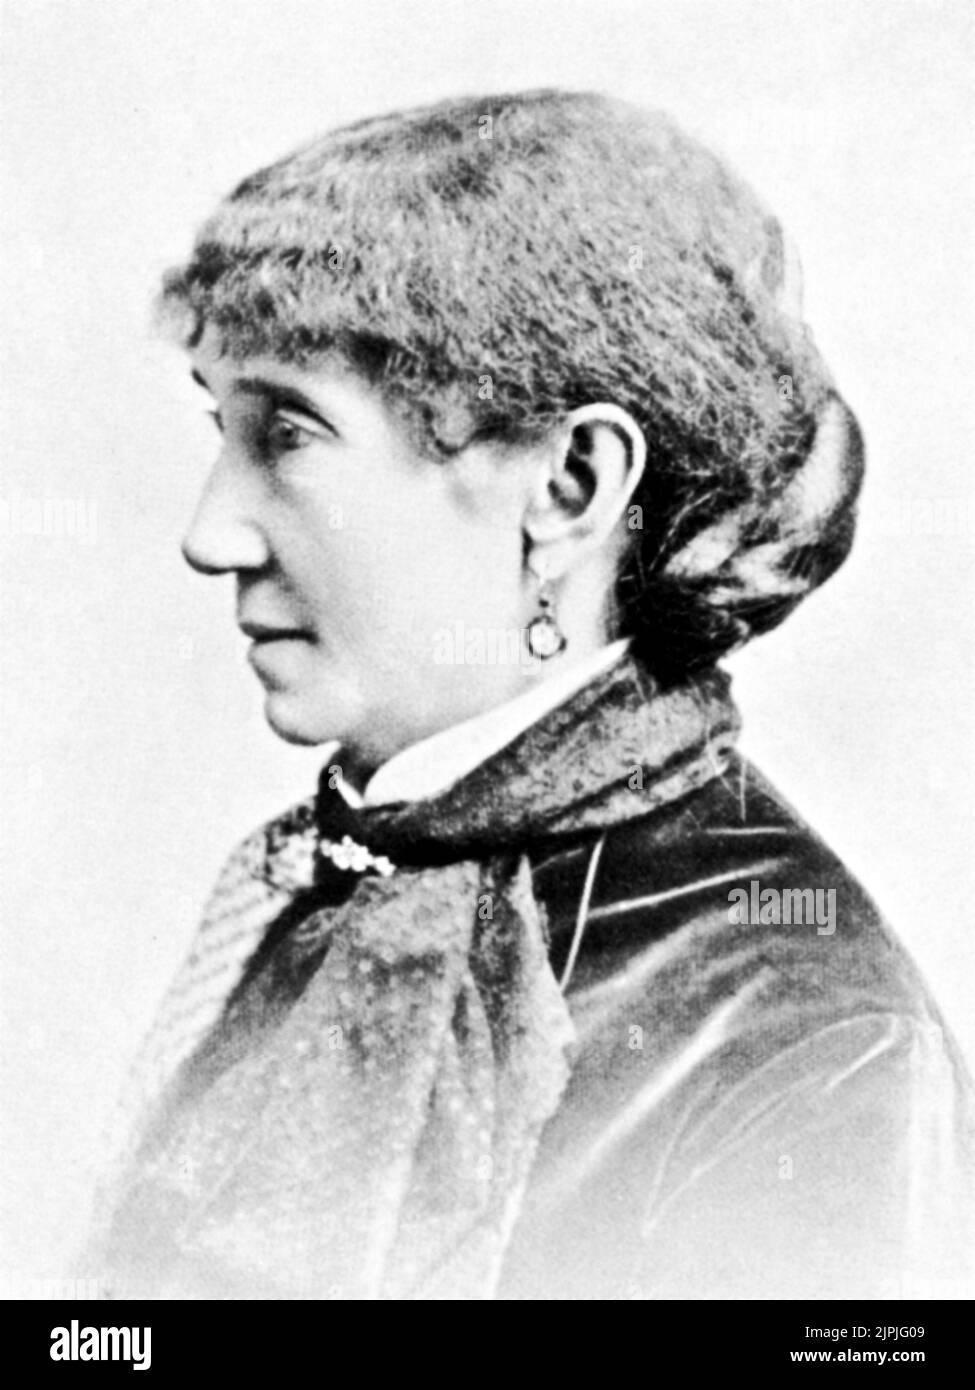 La novelista estadounidense MARY JANE HOLMES ( nee Mary Jane Hawes , 1825 - 1907 ) - SCRITTORE - SCRITTRICE - NOVLISTA - LETTERATURA - LETTERATO - LITERATURA - ESCRITOR - PROFILO - PERFIL - CHIGNON - FOULARD ---- Archivio GBB Foto de stock